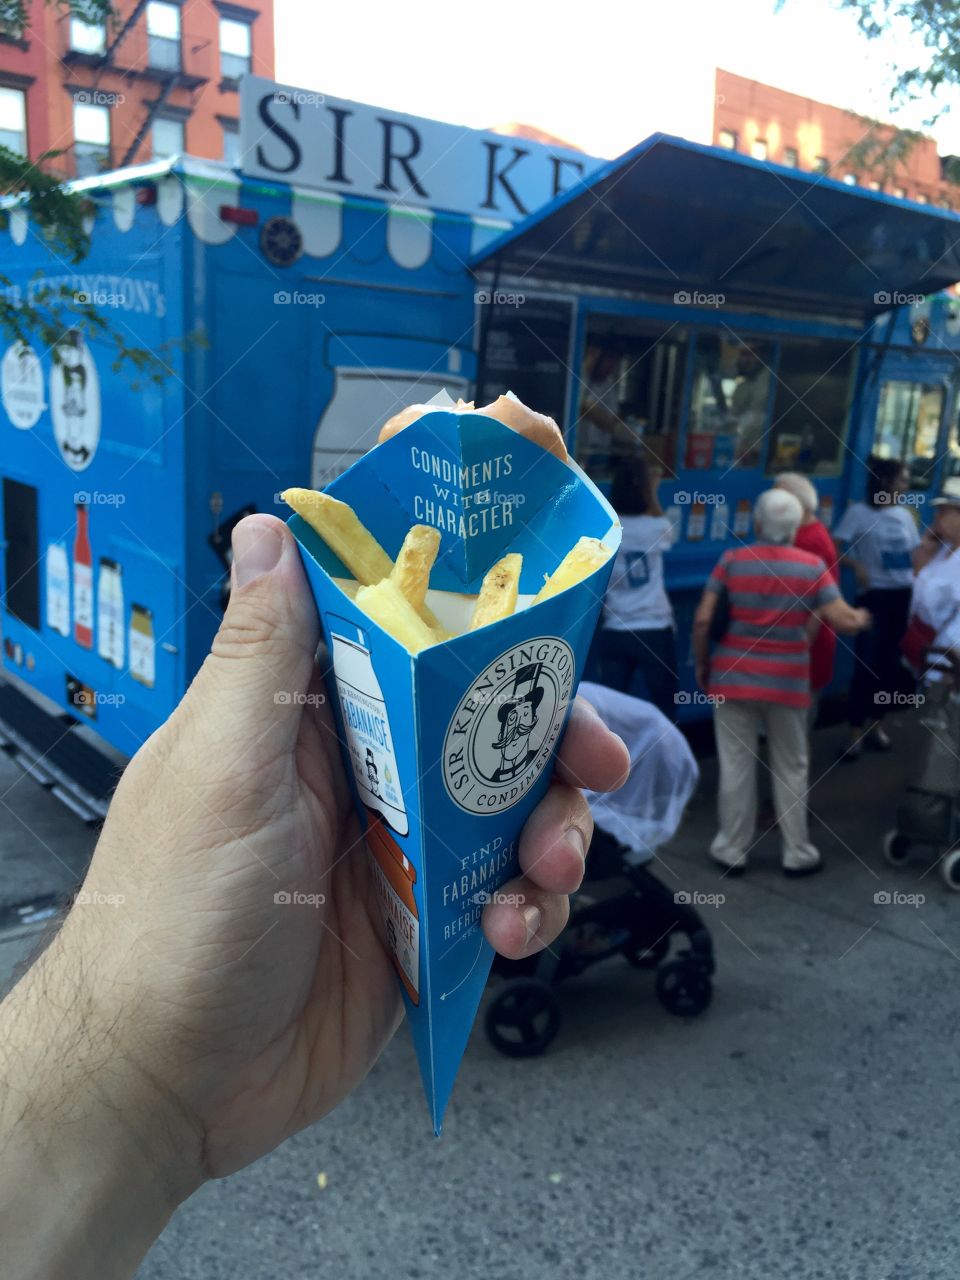 Free fries in Manhattan!